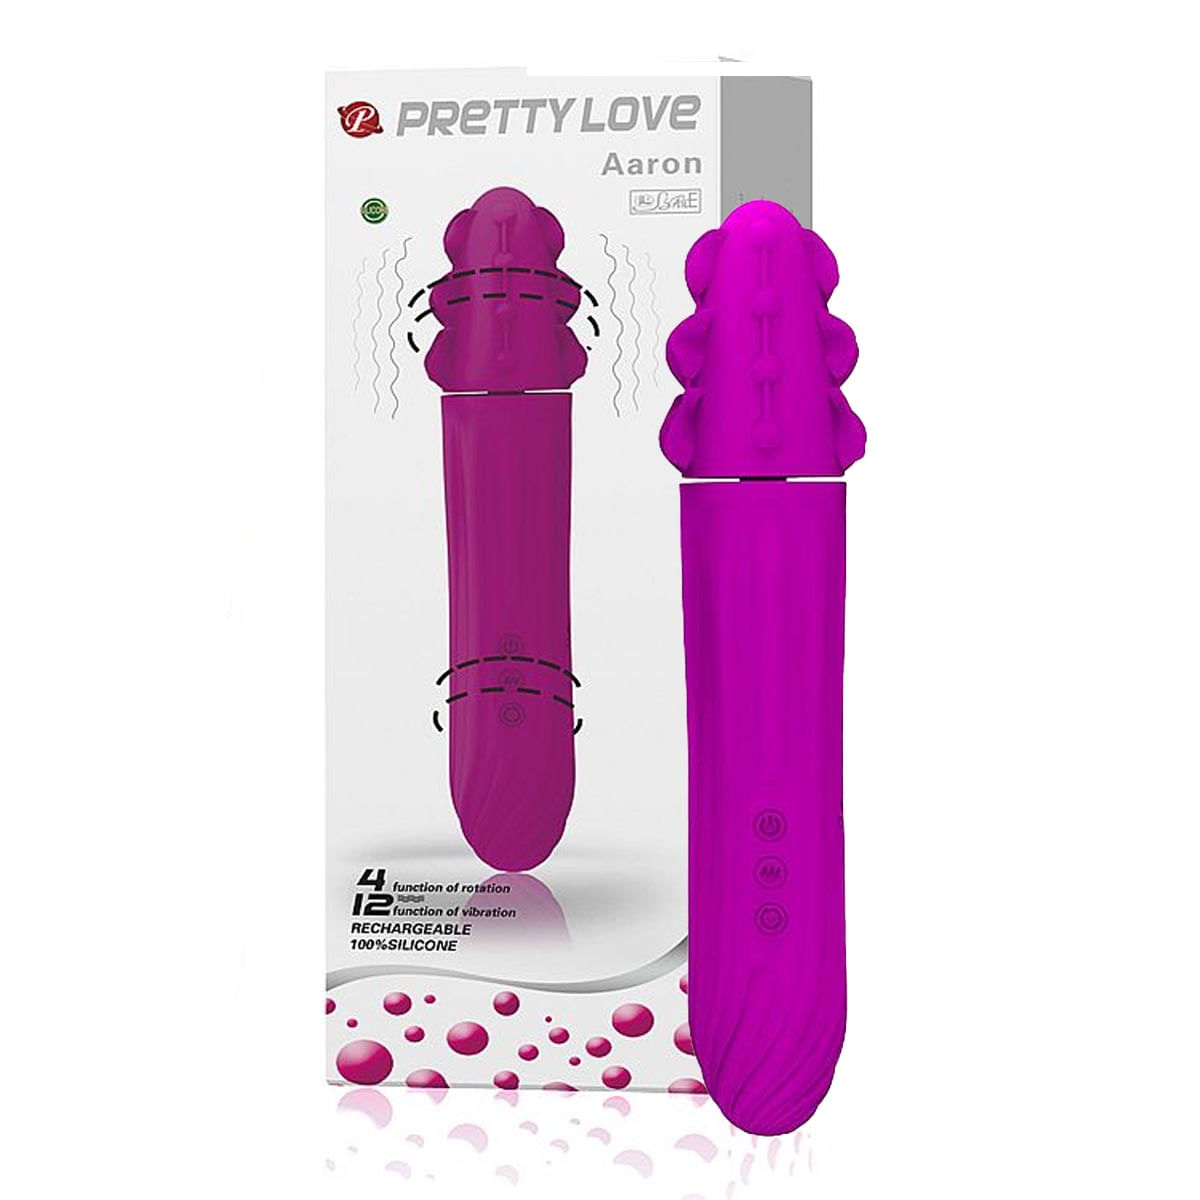 Pretty Love Aaron Vibrador Rotativo com 12 Níveis de Vibração Sexy Import